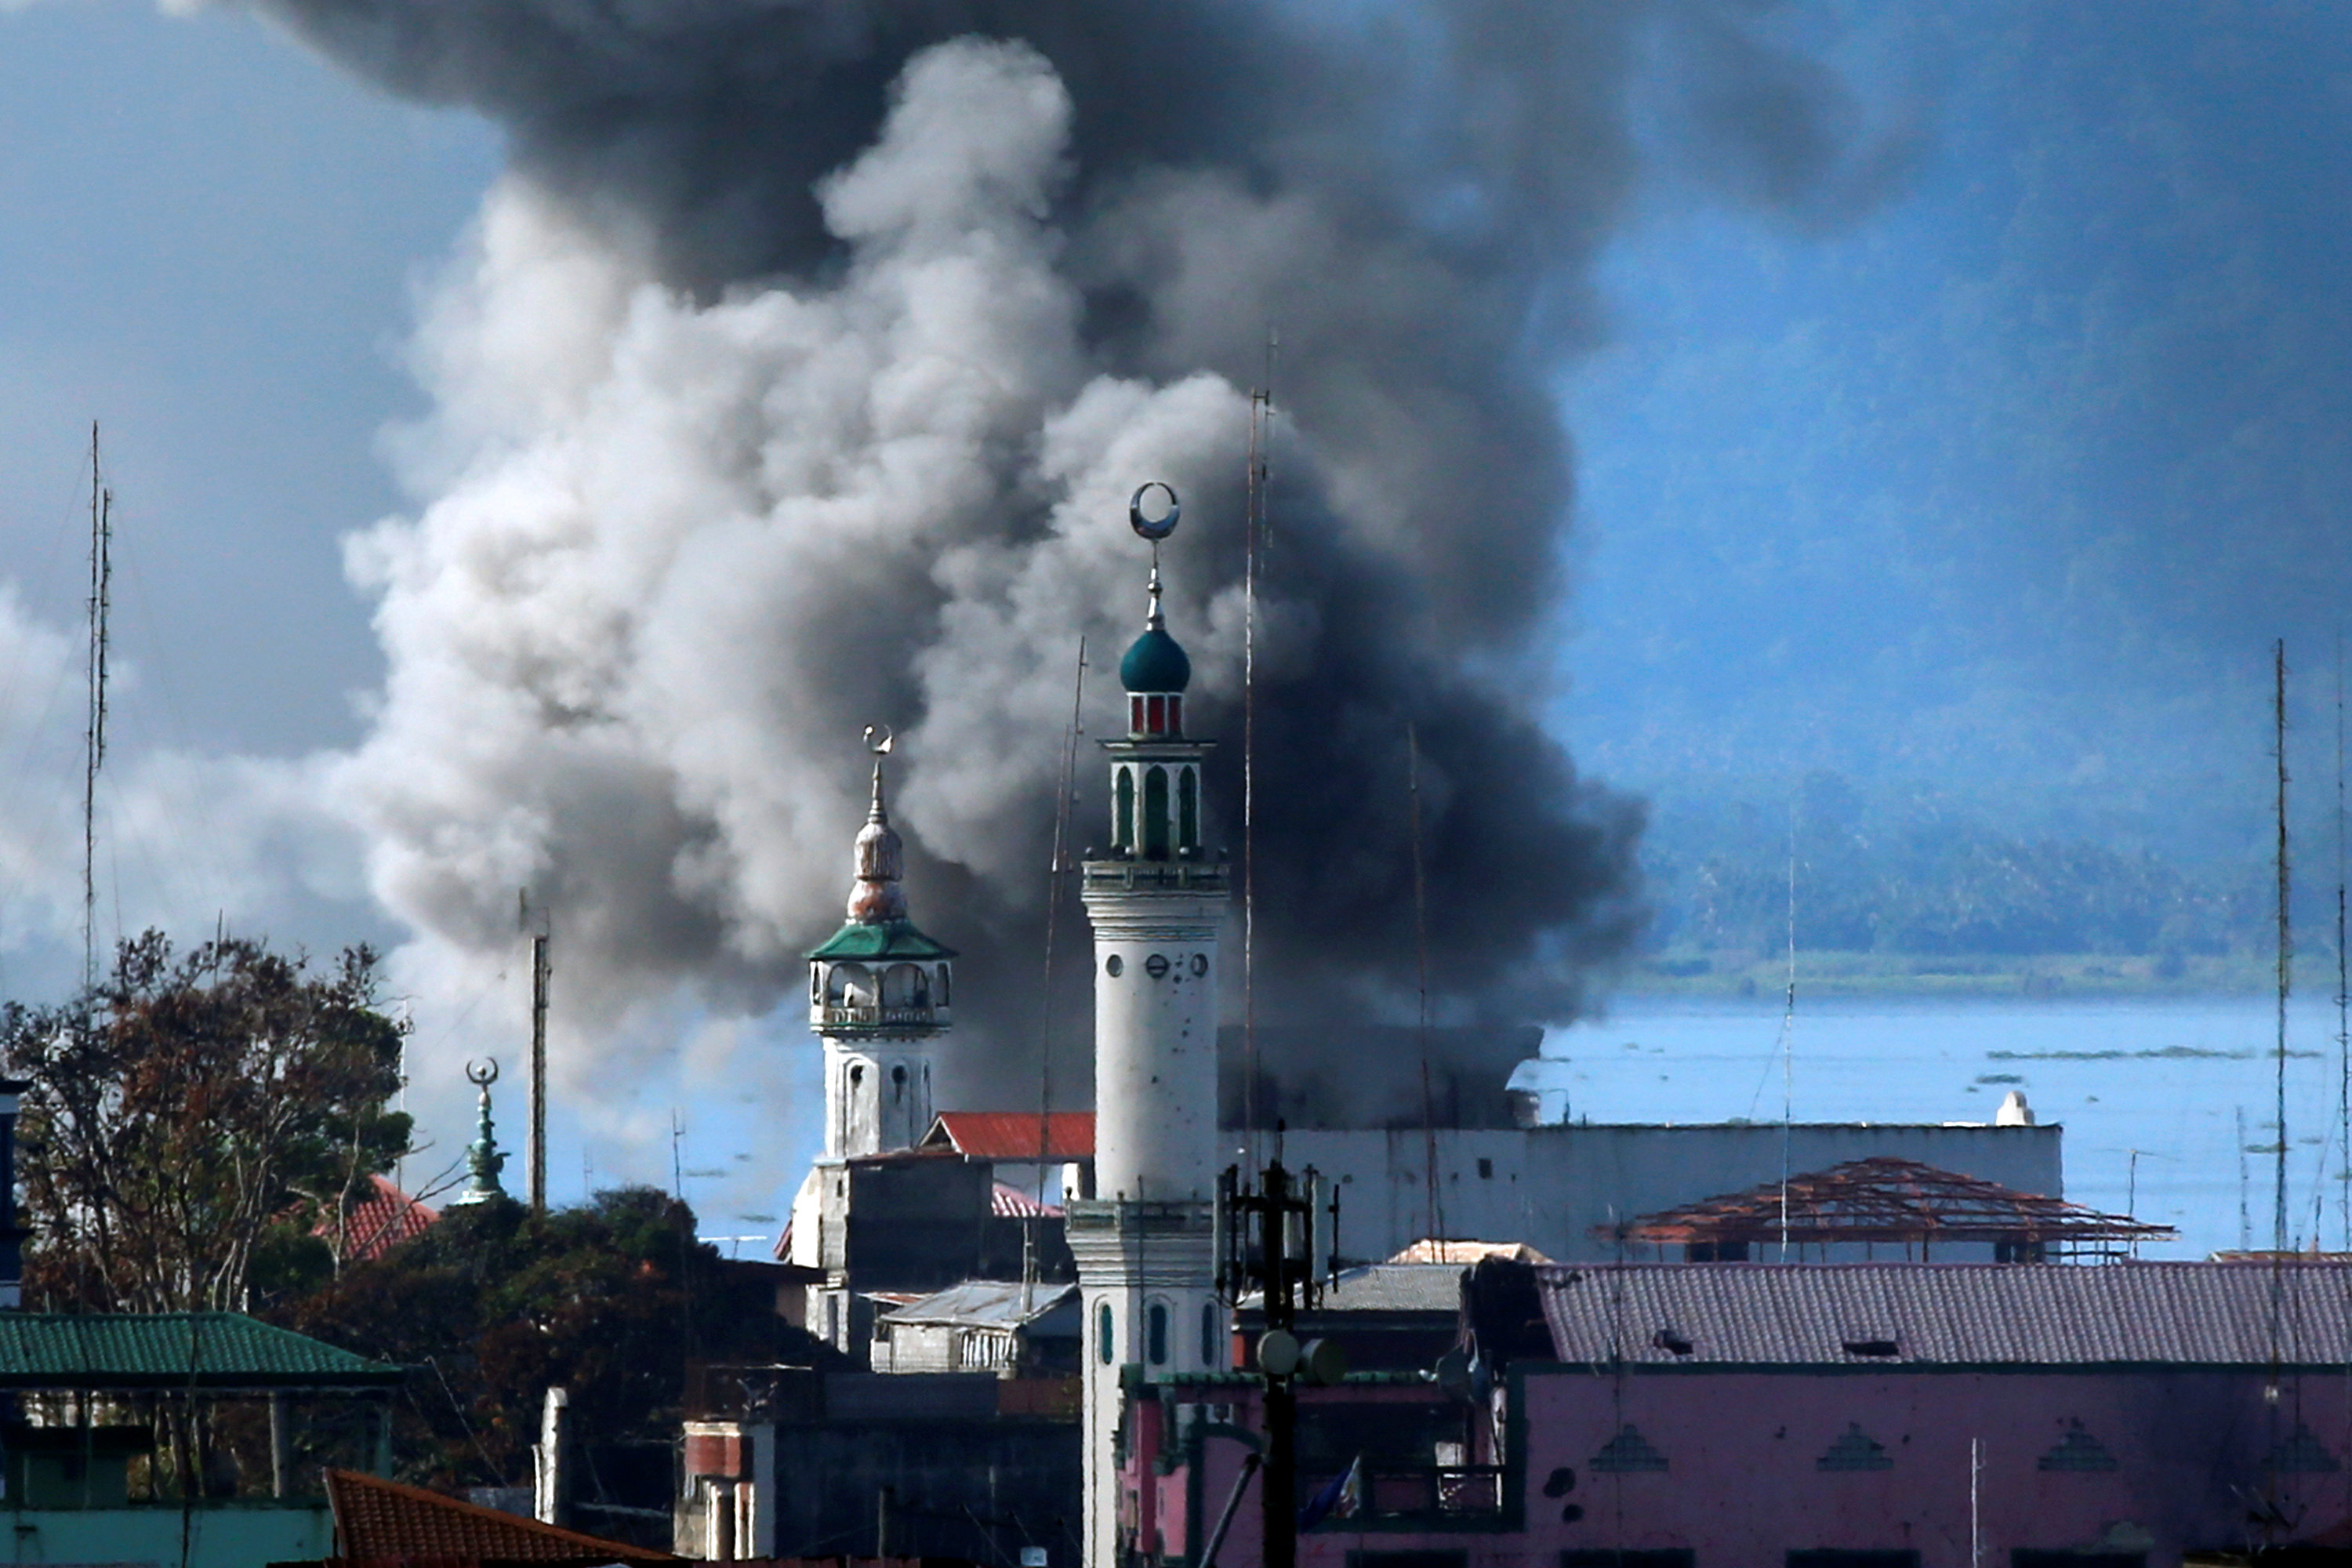 لحظة اطلاق قذيفة من الطيران بمحيط مسجد